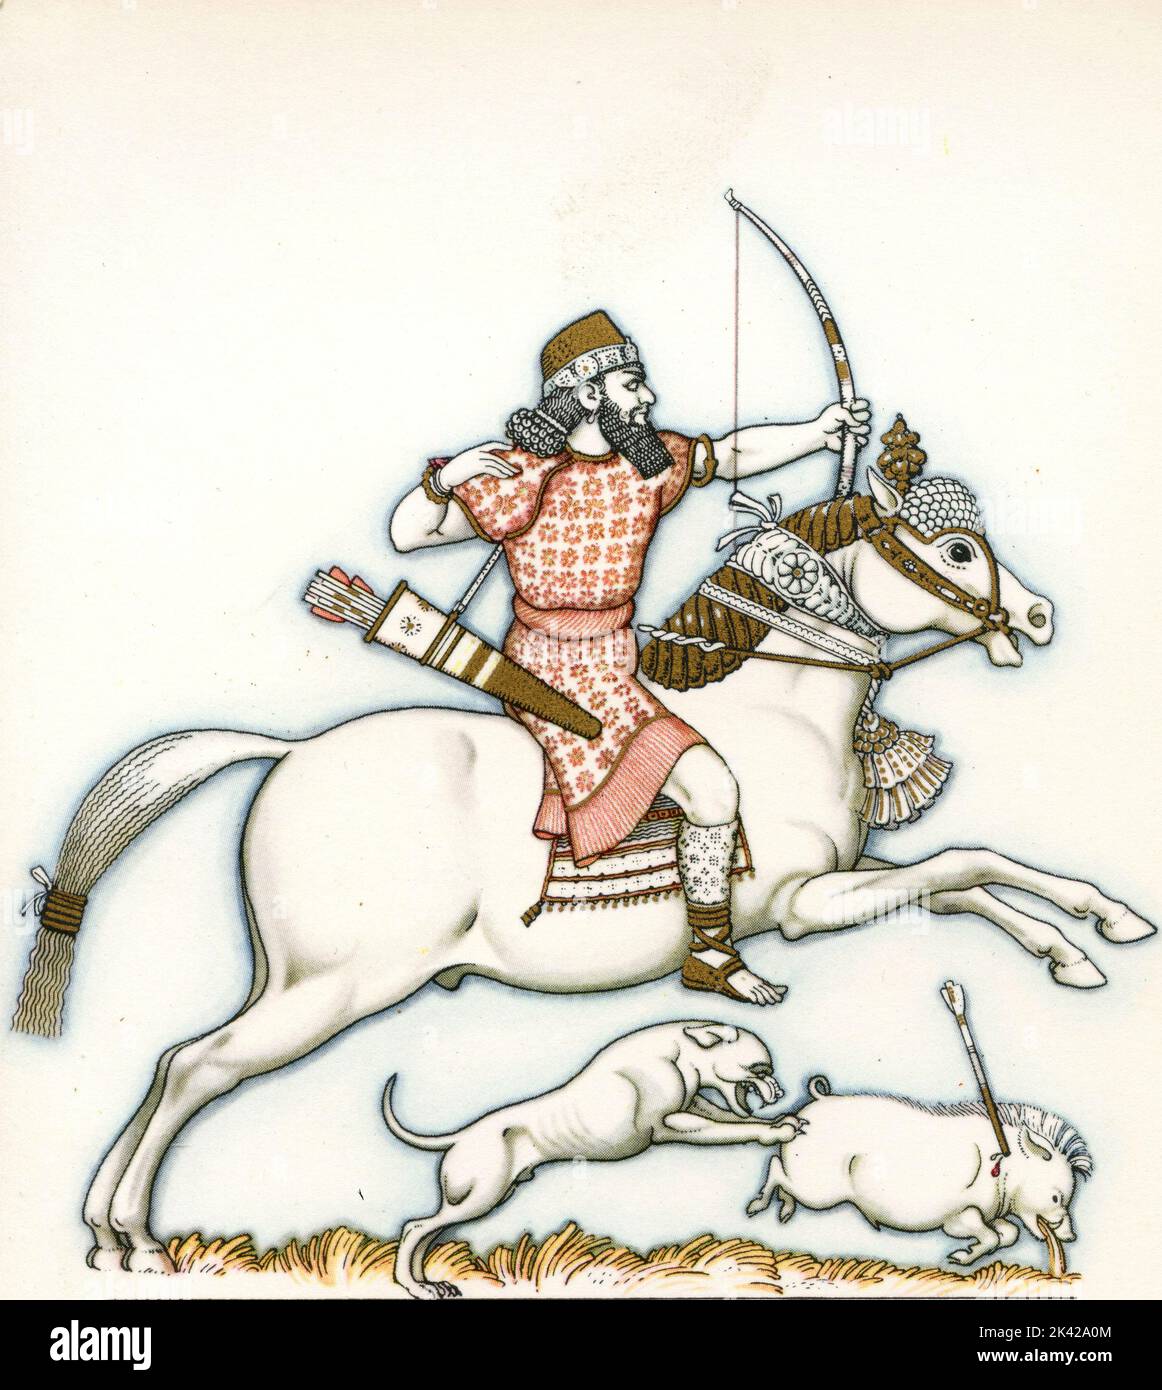 Illustration de la chasse au roi Ashurbanipal, Empire assyrien, 650 av. J.-C. Banque D'Images